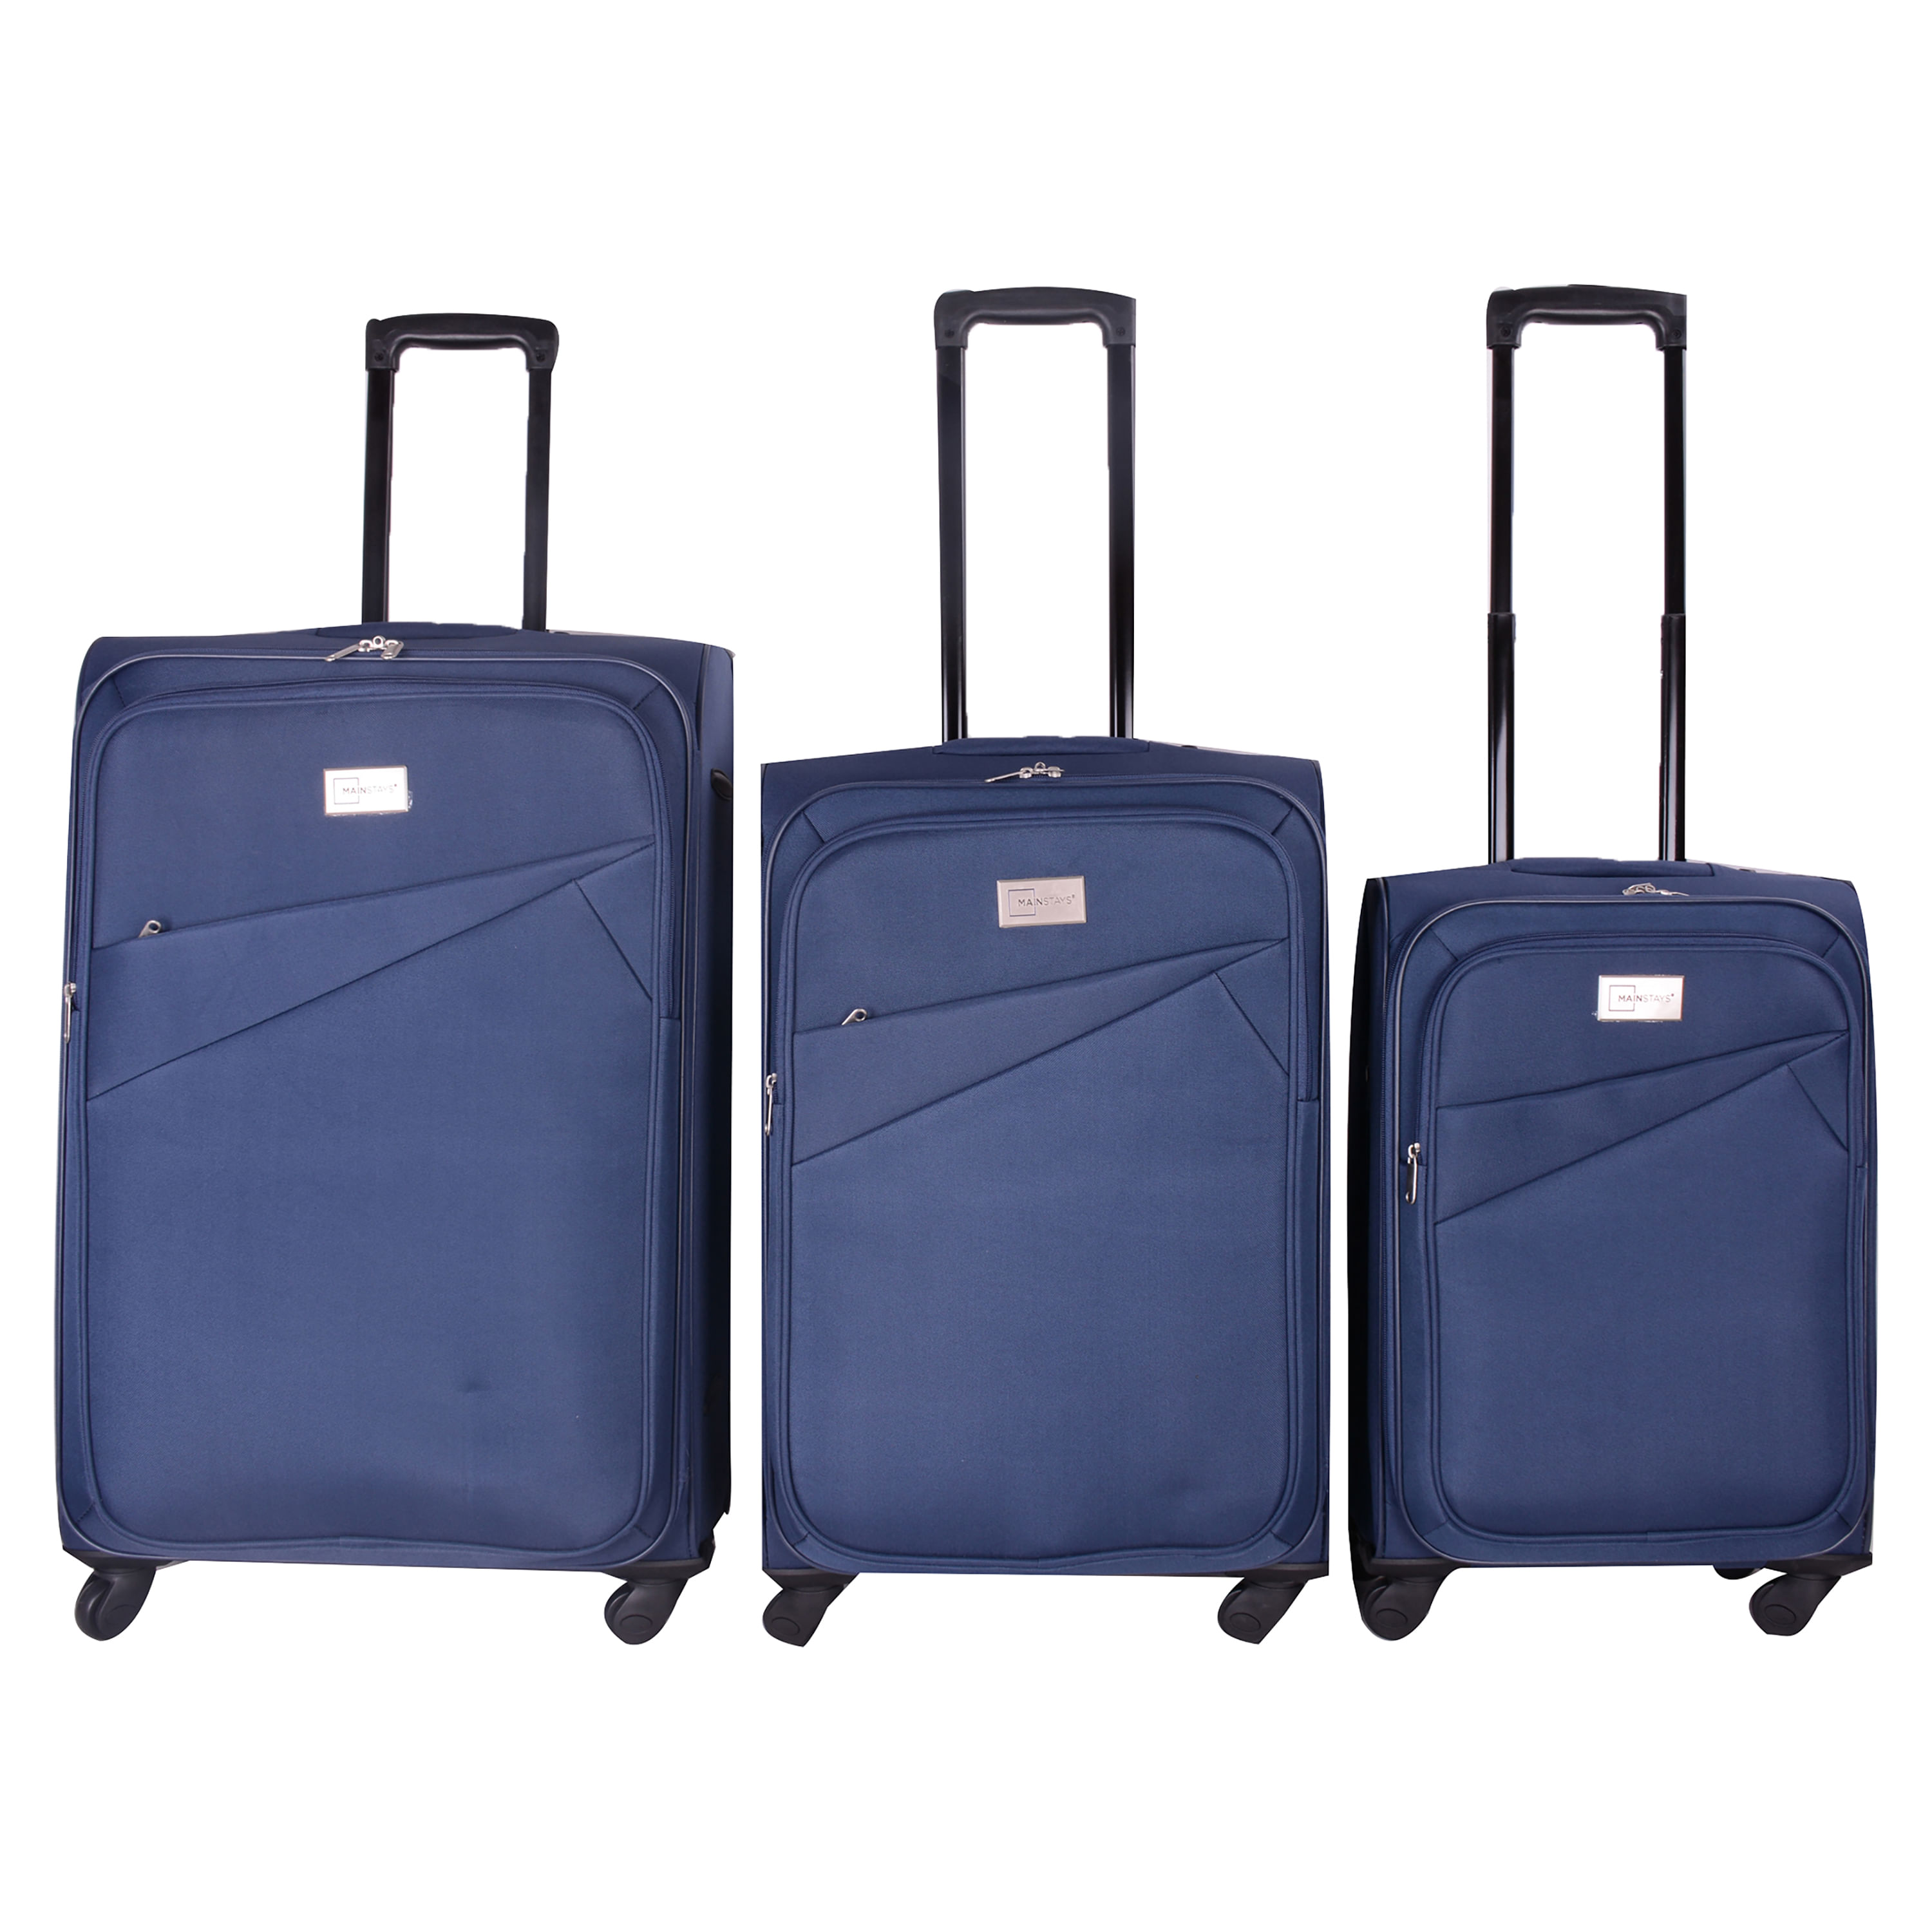 juego de maletas loves - Azul y mora - Tienda de maletas bolsos y mochilas